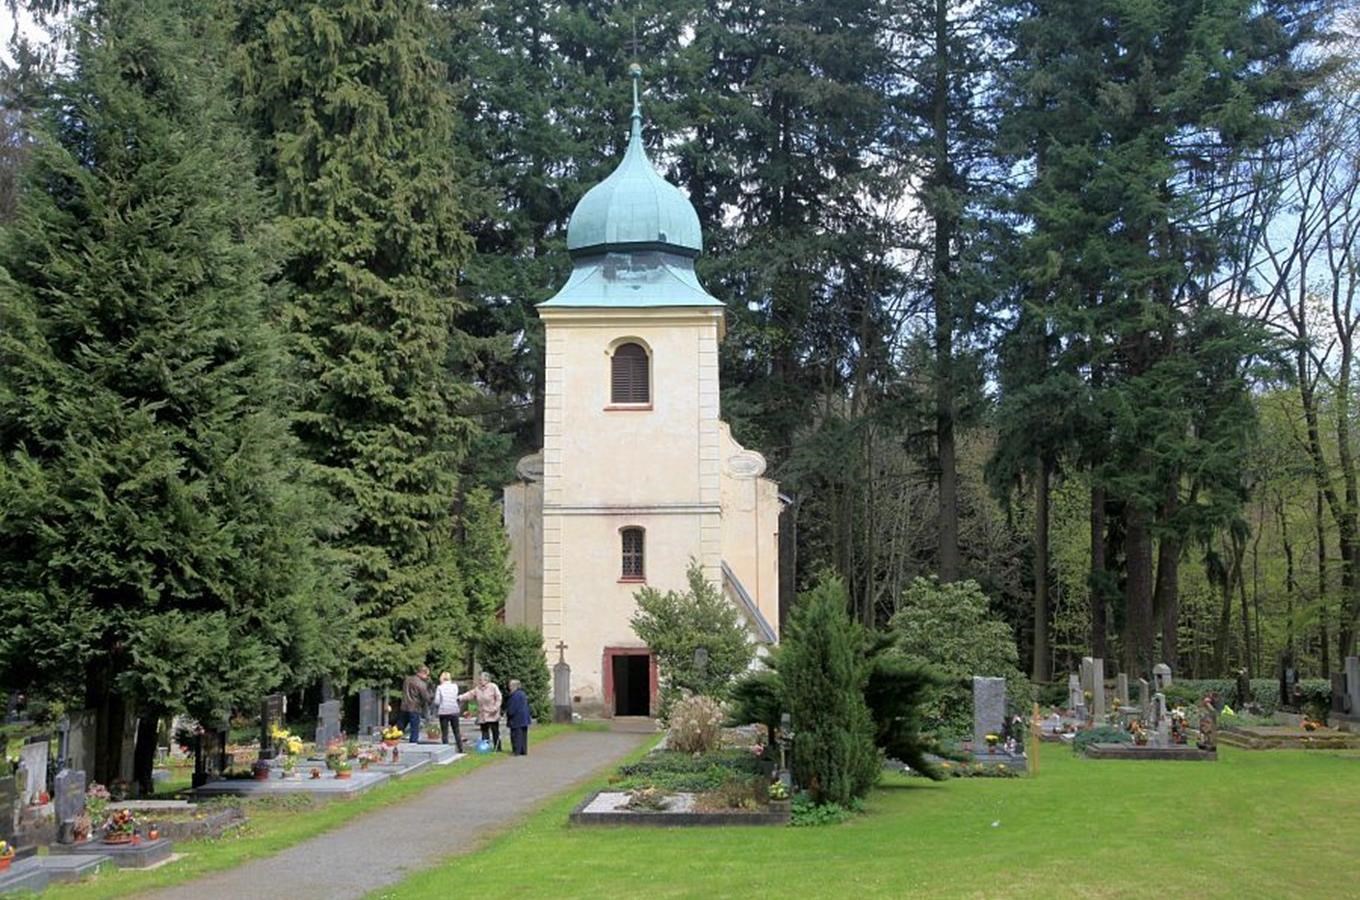 Lesní hřbitov Aldašín s kostelem sv. Jiří